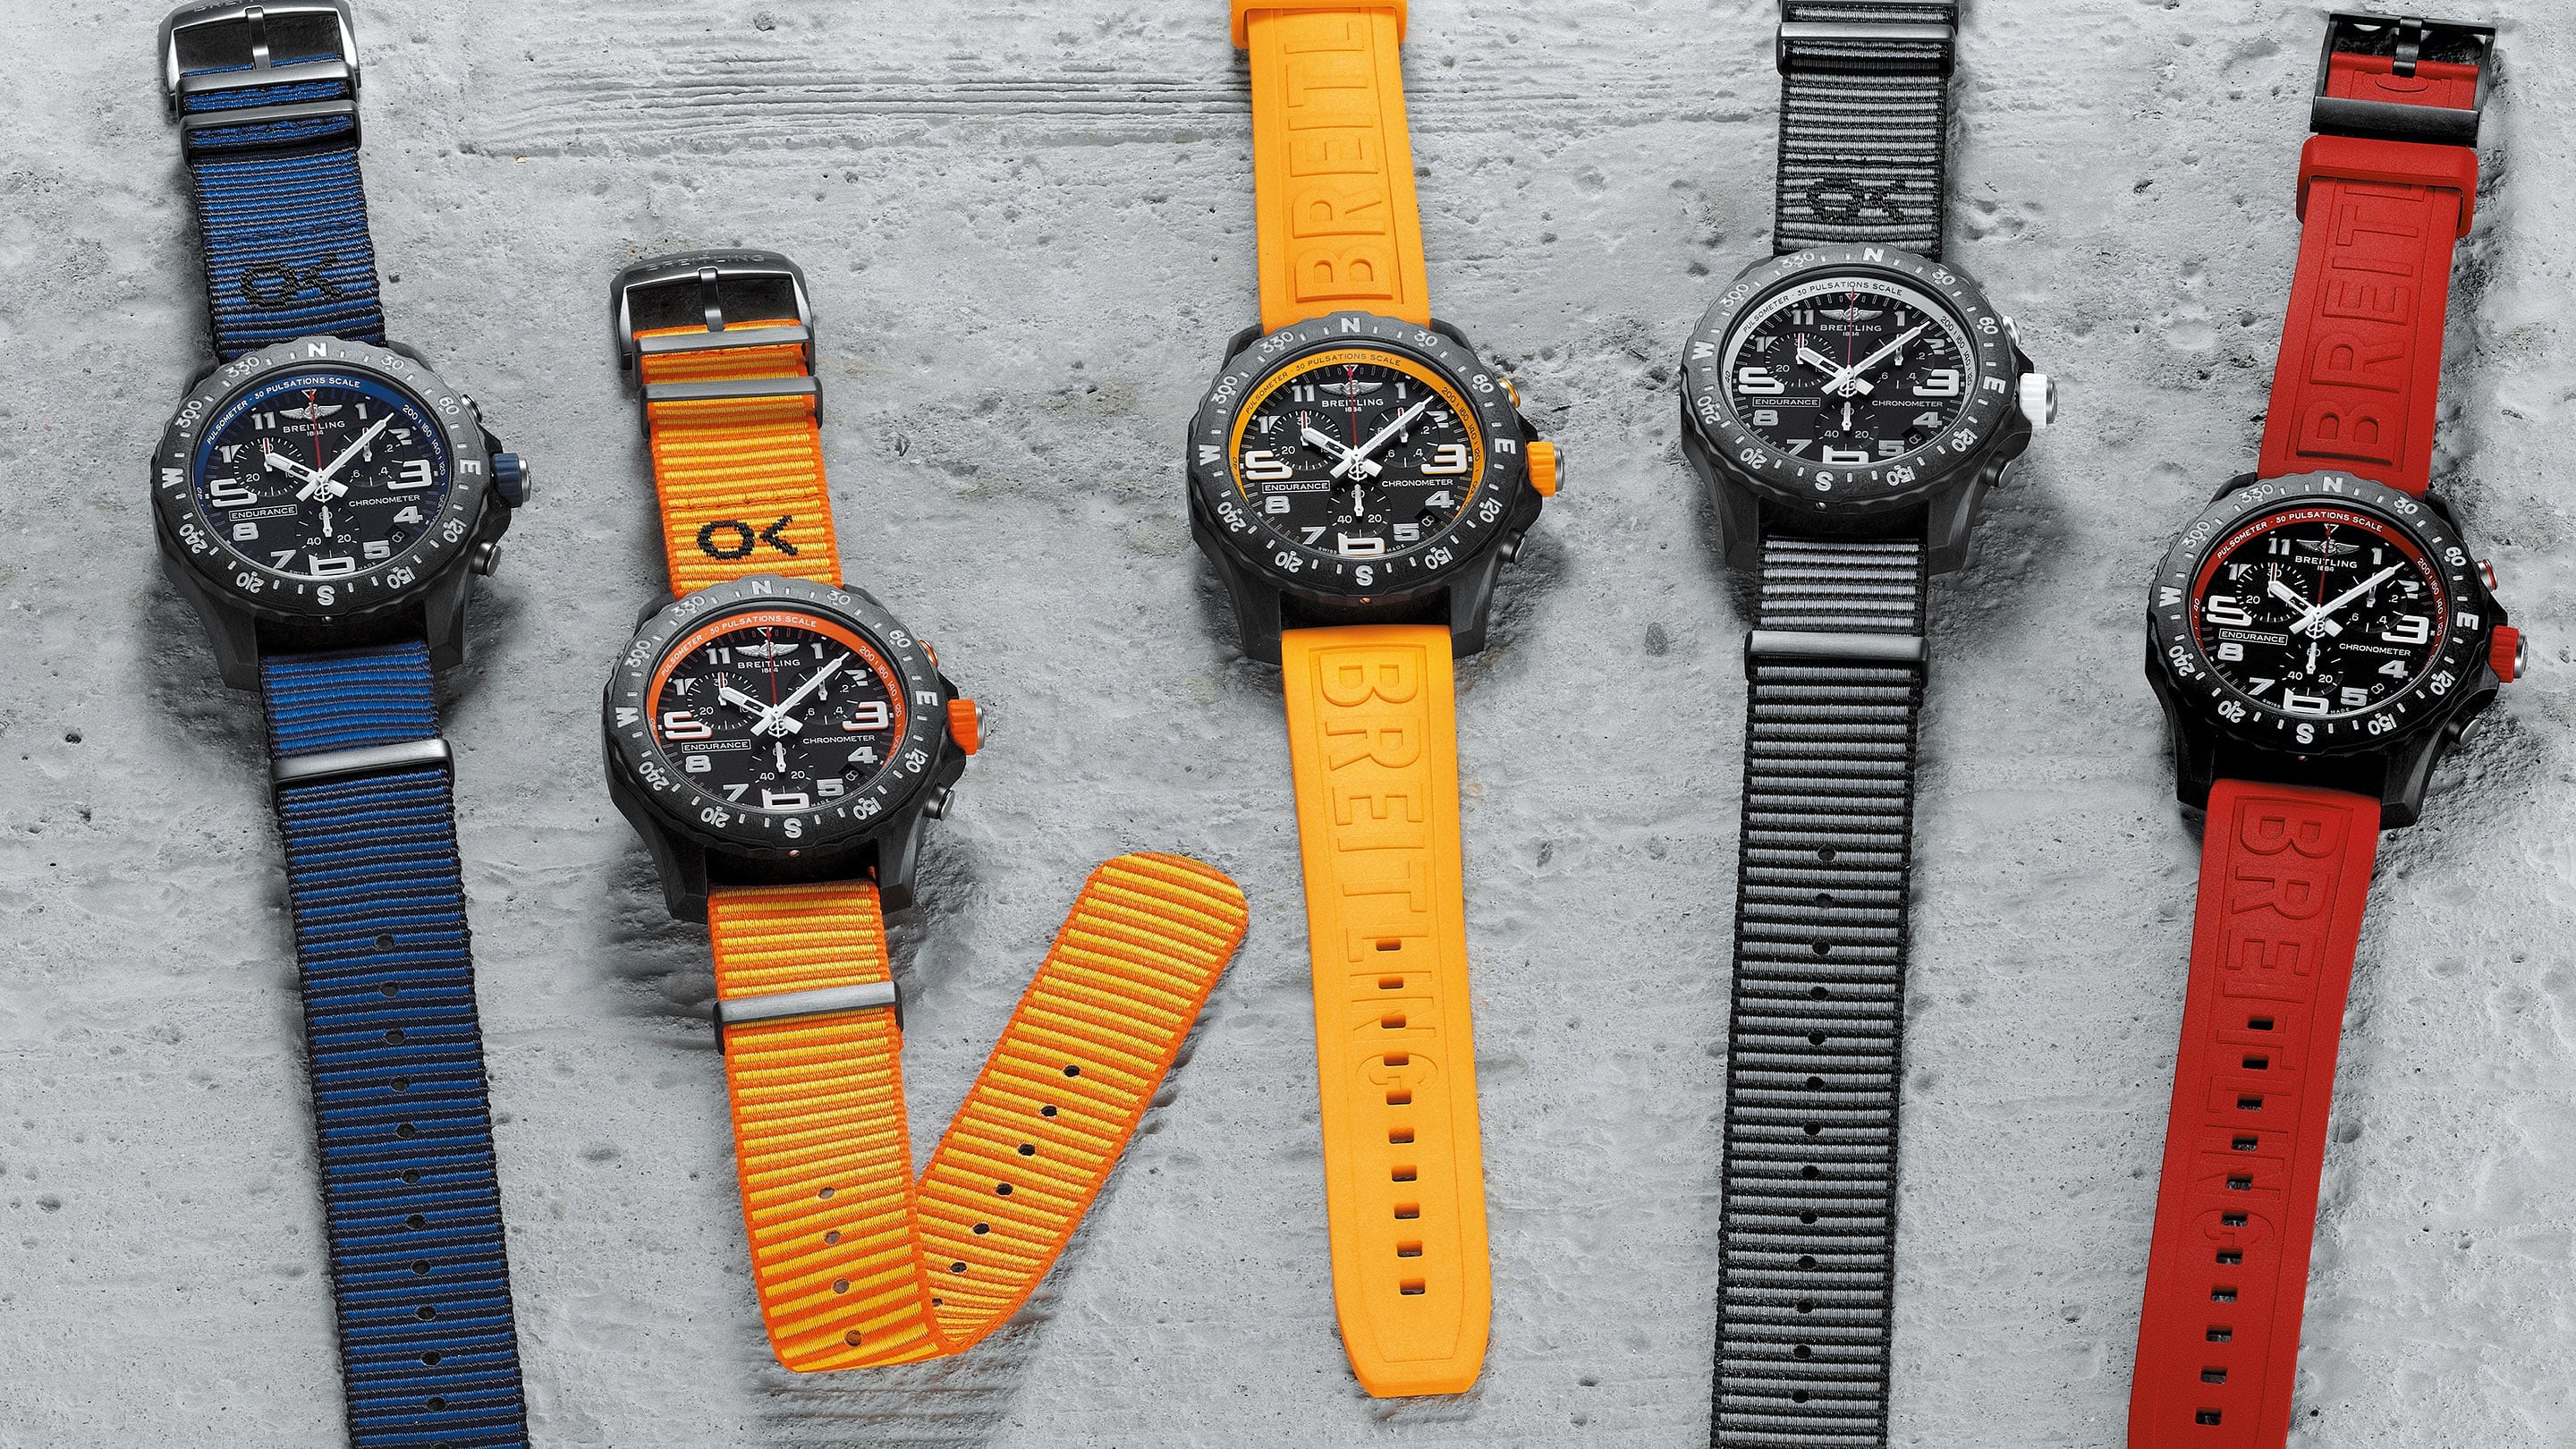 Breitling cho ra mắt mẫu đồng hồ có dây đeo màu tươi sáng tương ứng với phần viền mặt số. Ảnh: Hodinkee